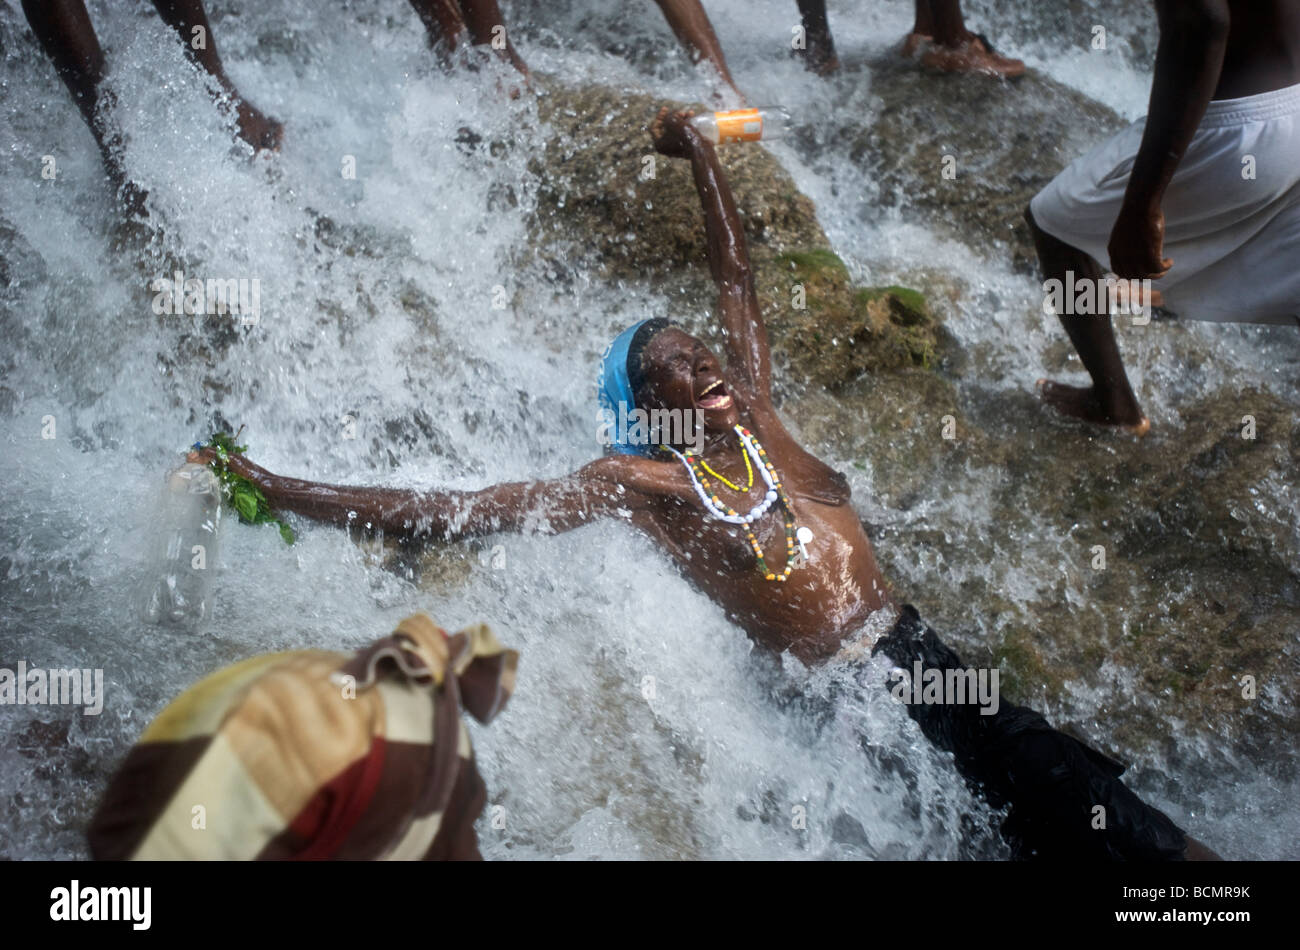 Eine Frau "Pran Lwa" unter den Wasserfällen an Saut D'eau im zentralen Haiti während des jährlichen Festivals Voodoo dort am 15. Juli 2008. Stockfoto